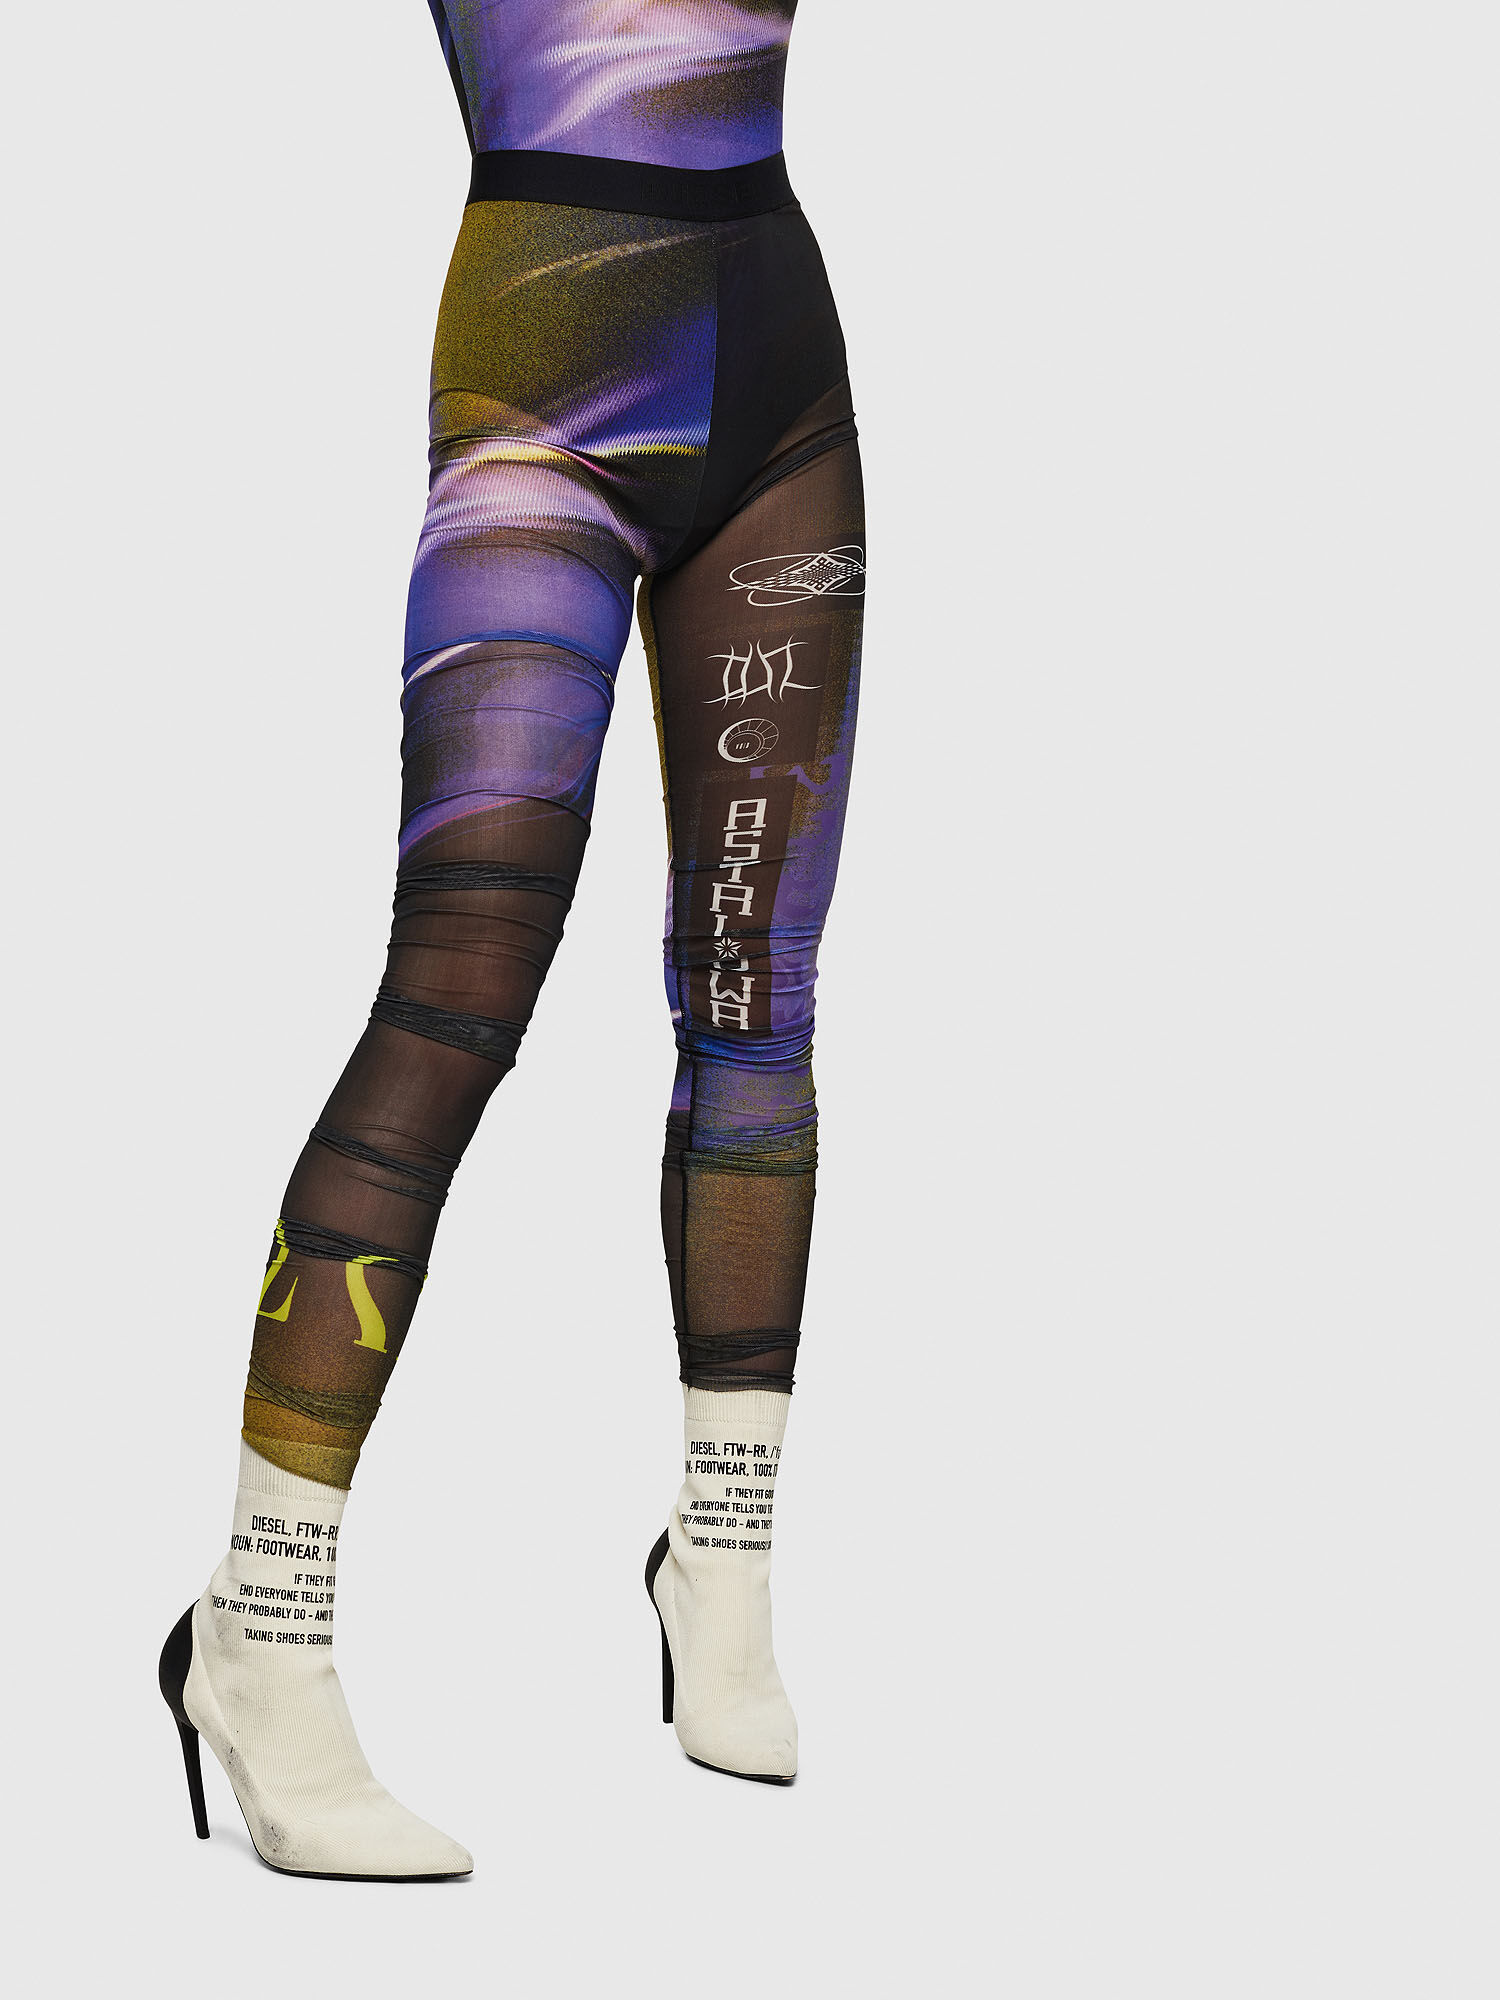 DIESEL - Women's printed leggings 